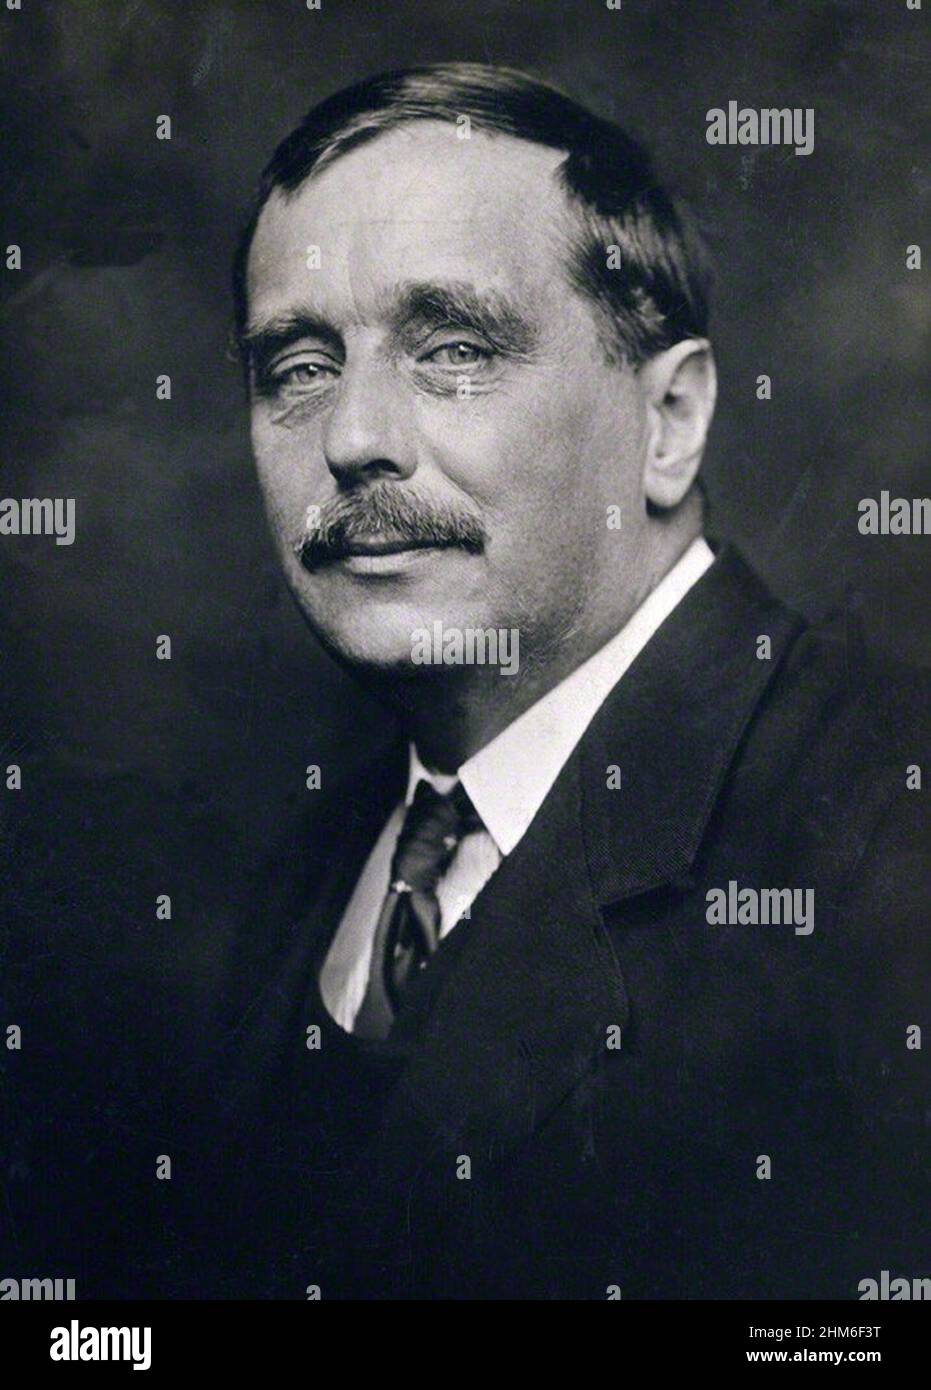 Un ritratto dello scrittore inglese HG Wells, autore della Time Machine, dal 1920 quando aveva 54 anni. Foto Stock